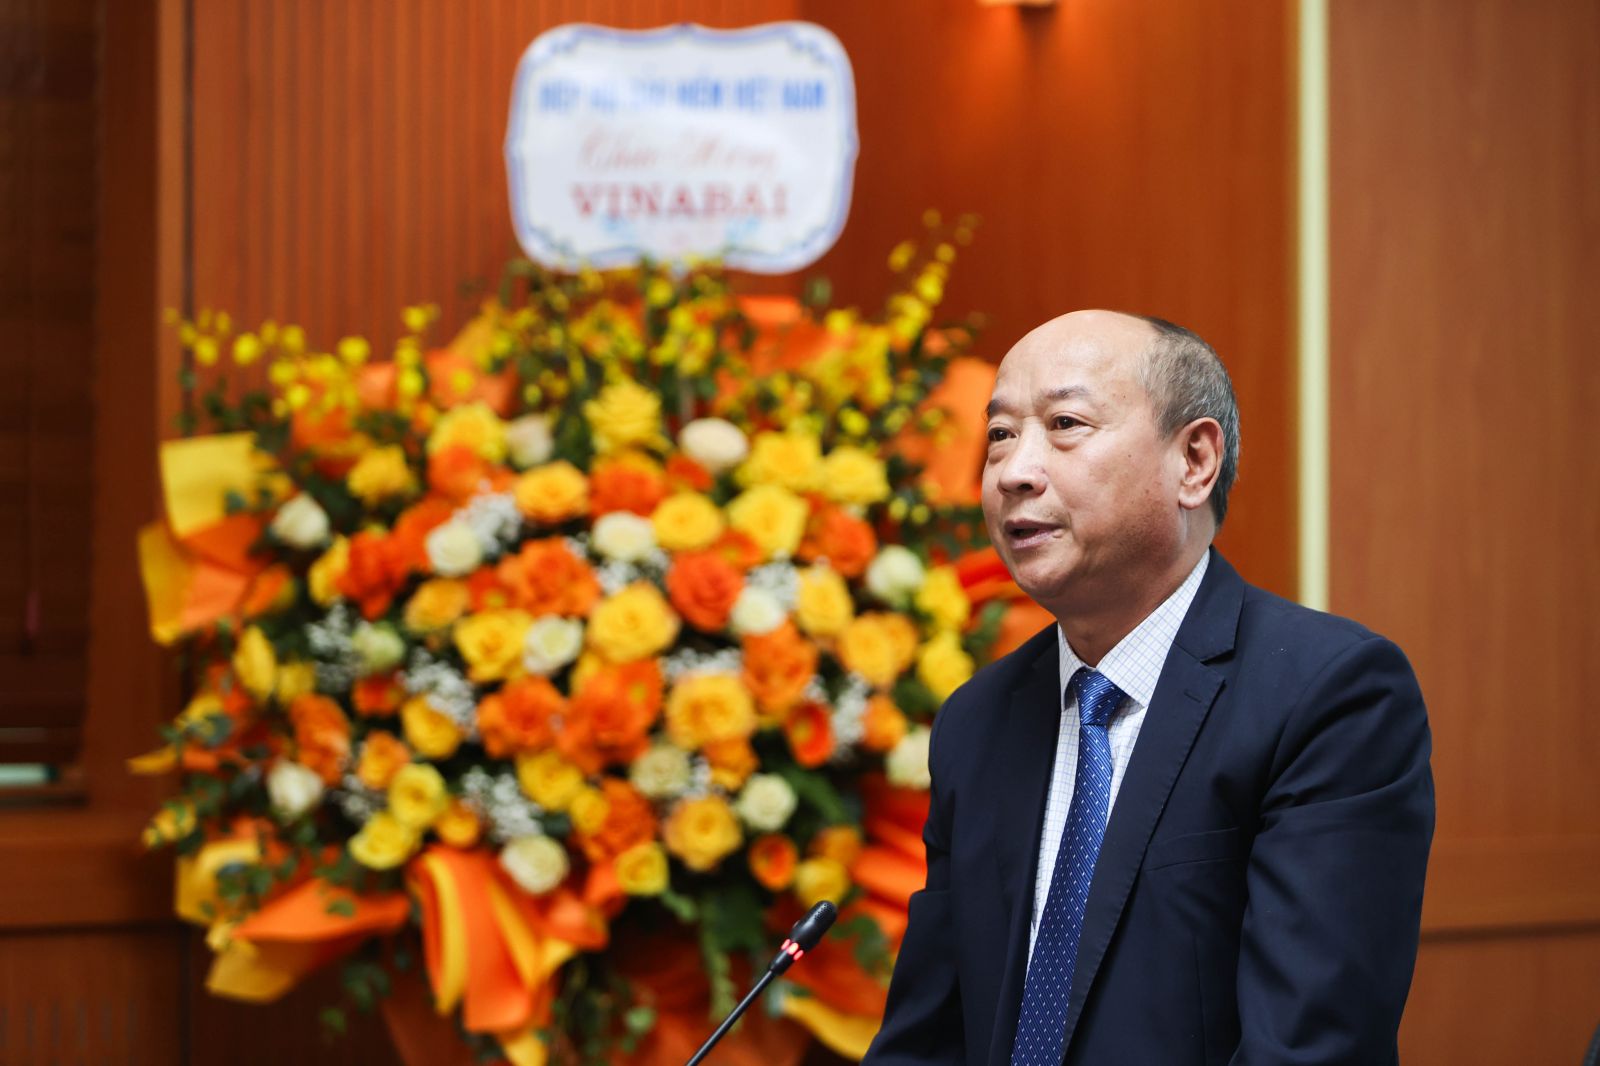 Ông Nguyễn Quang Huyền, Phó Cục trưởng Cục Quản lý, Giám sát bảo hiểm (Bộ Tài chính)